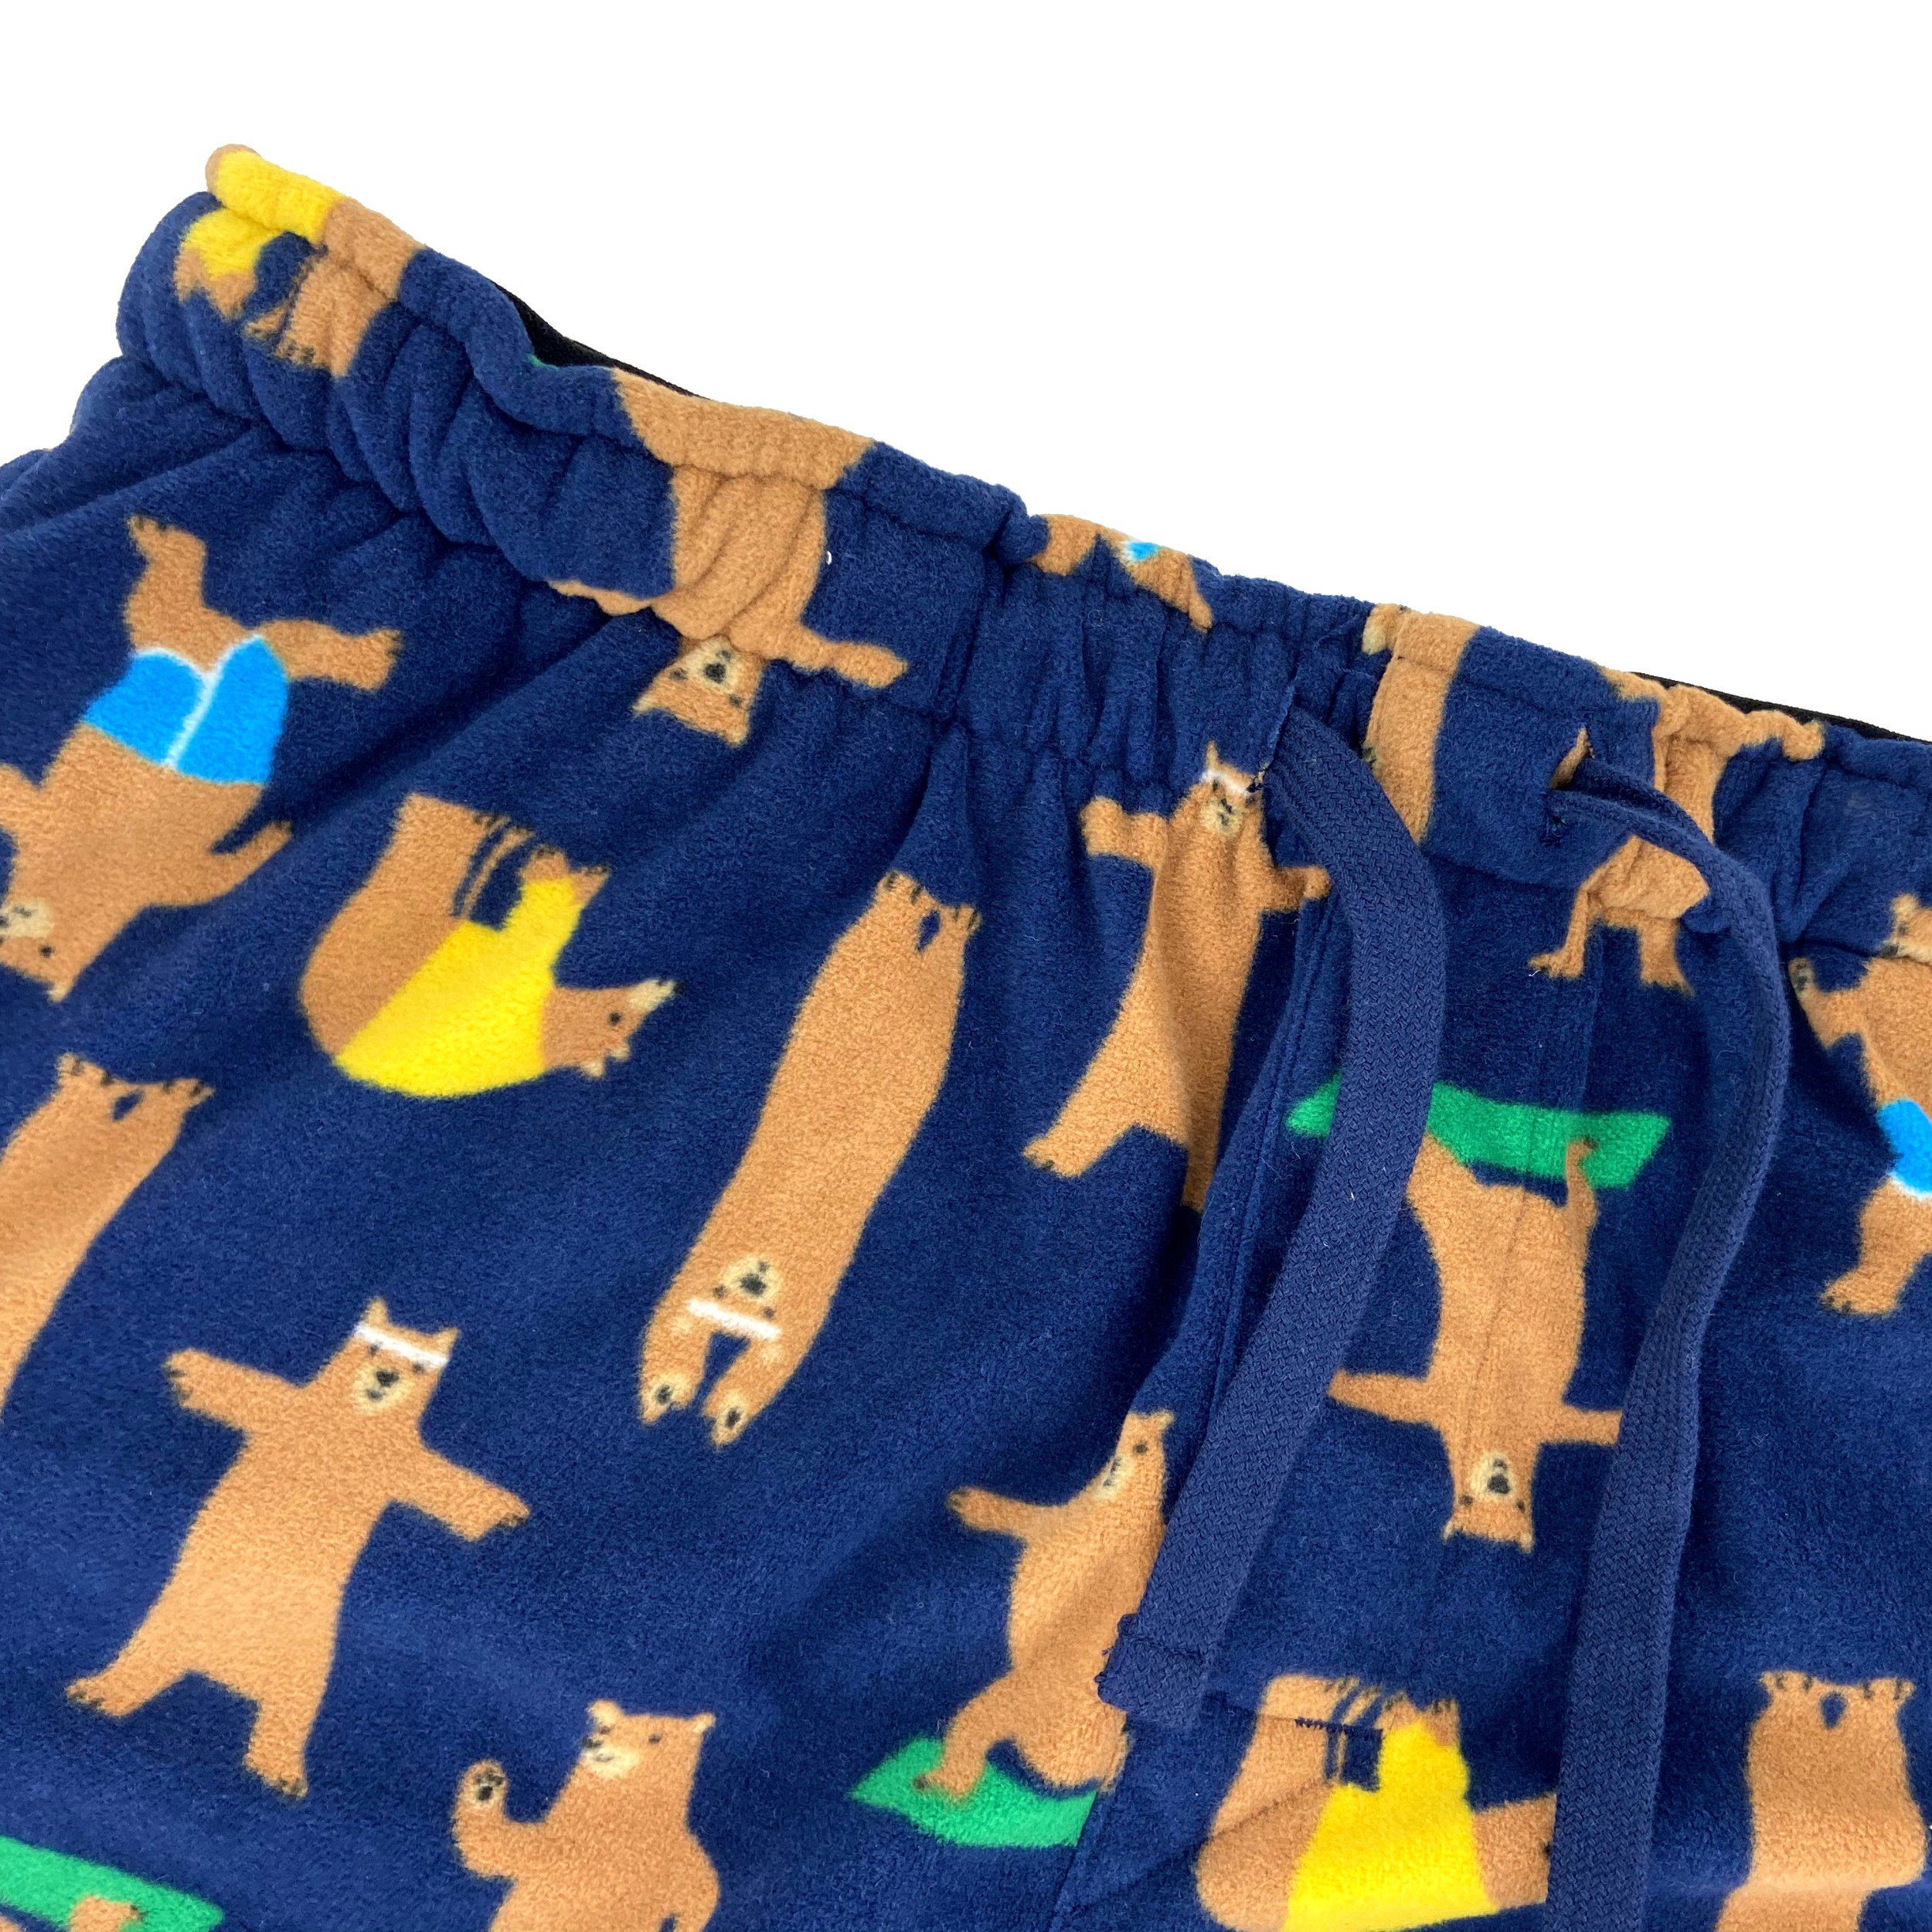 Soft Warm Cozy Fleece Pajama Bottoms. Bears Doing Yoga Print Pants